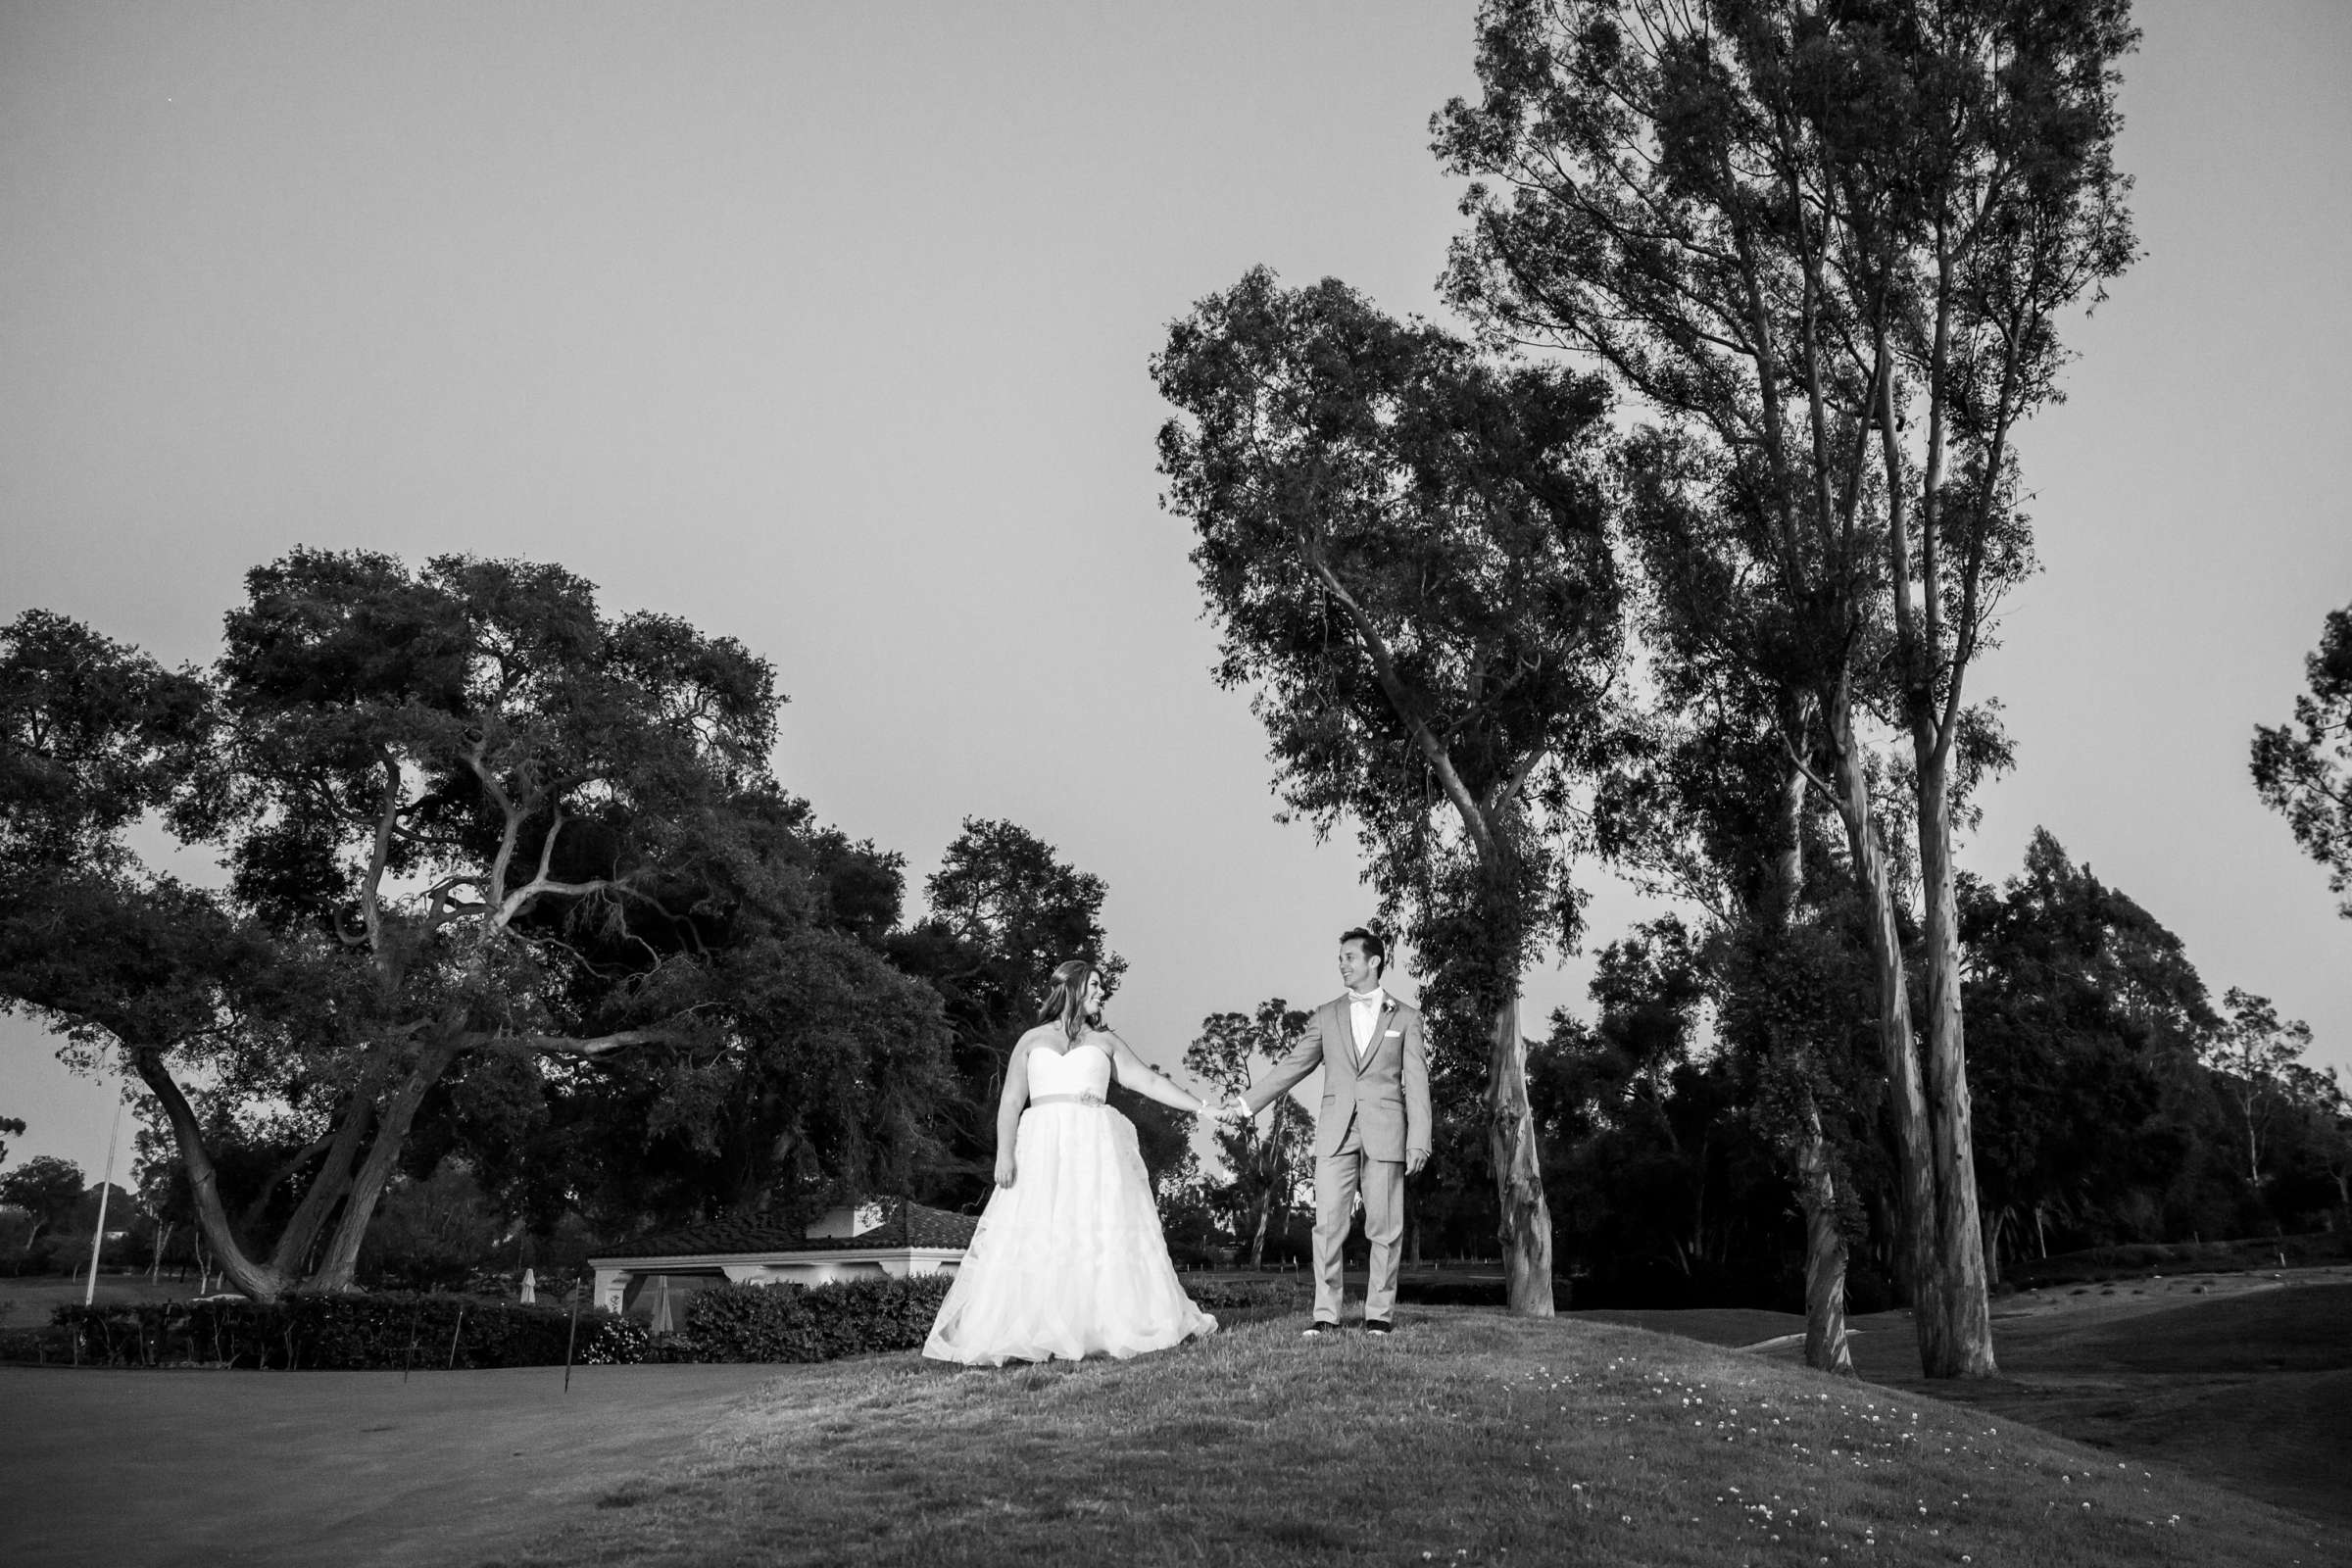 Rancho Santa Fe Golf Club Wedding coordinated by Monarch Weddings, Carolynn and Jon Wedding Photo #31 by True Photography